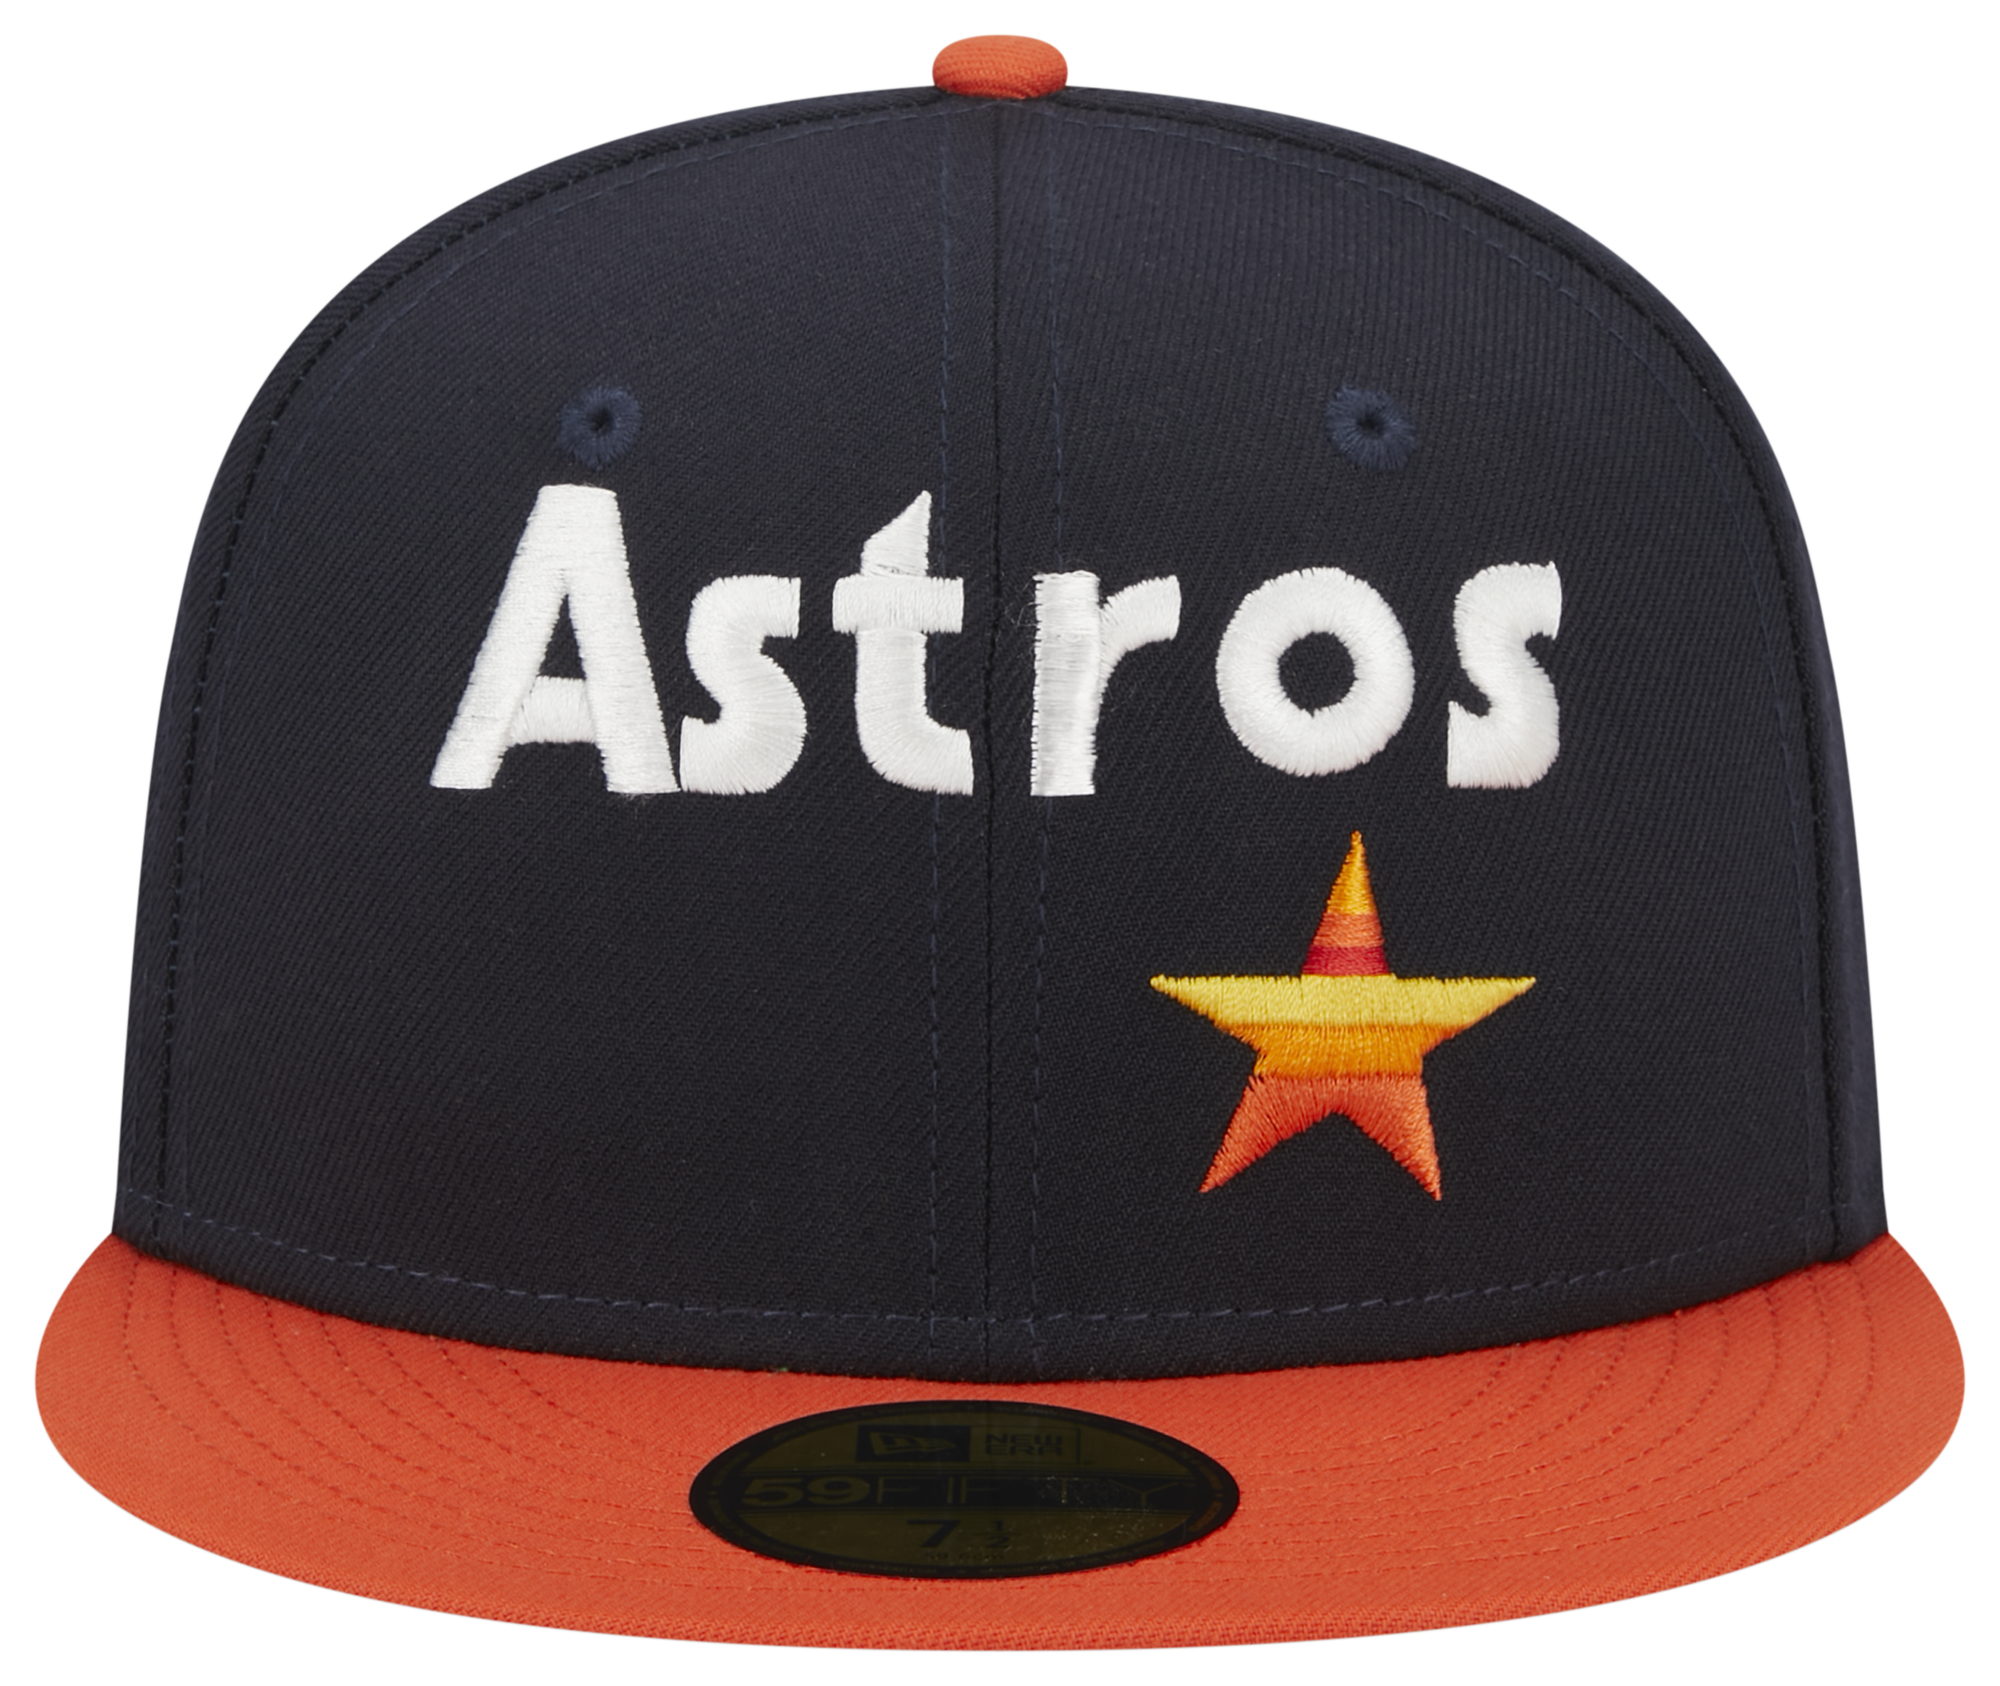 New Era Astros Retro Script Cap